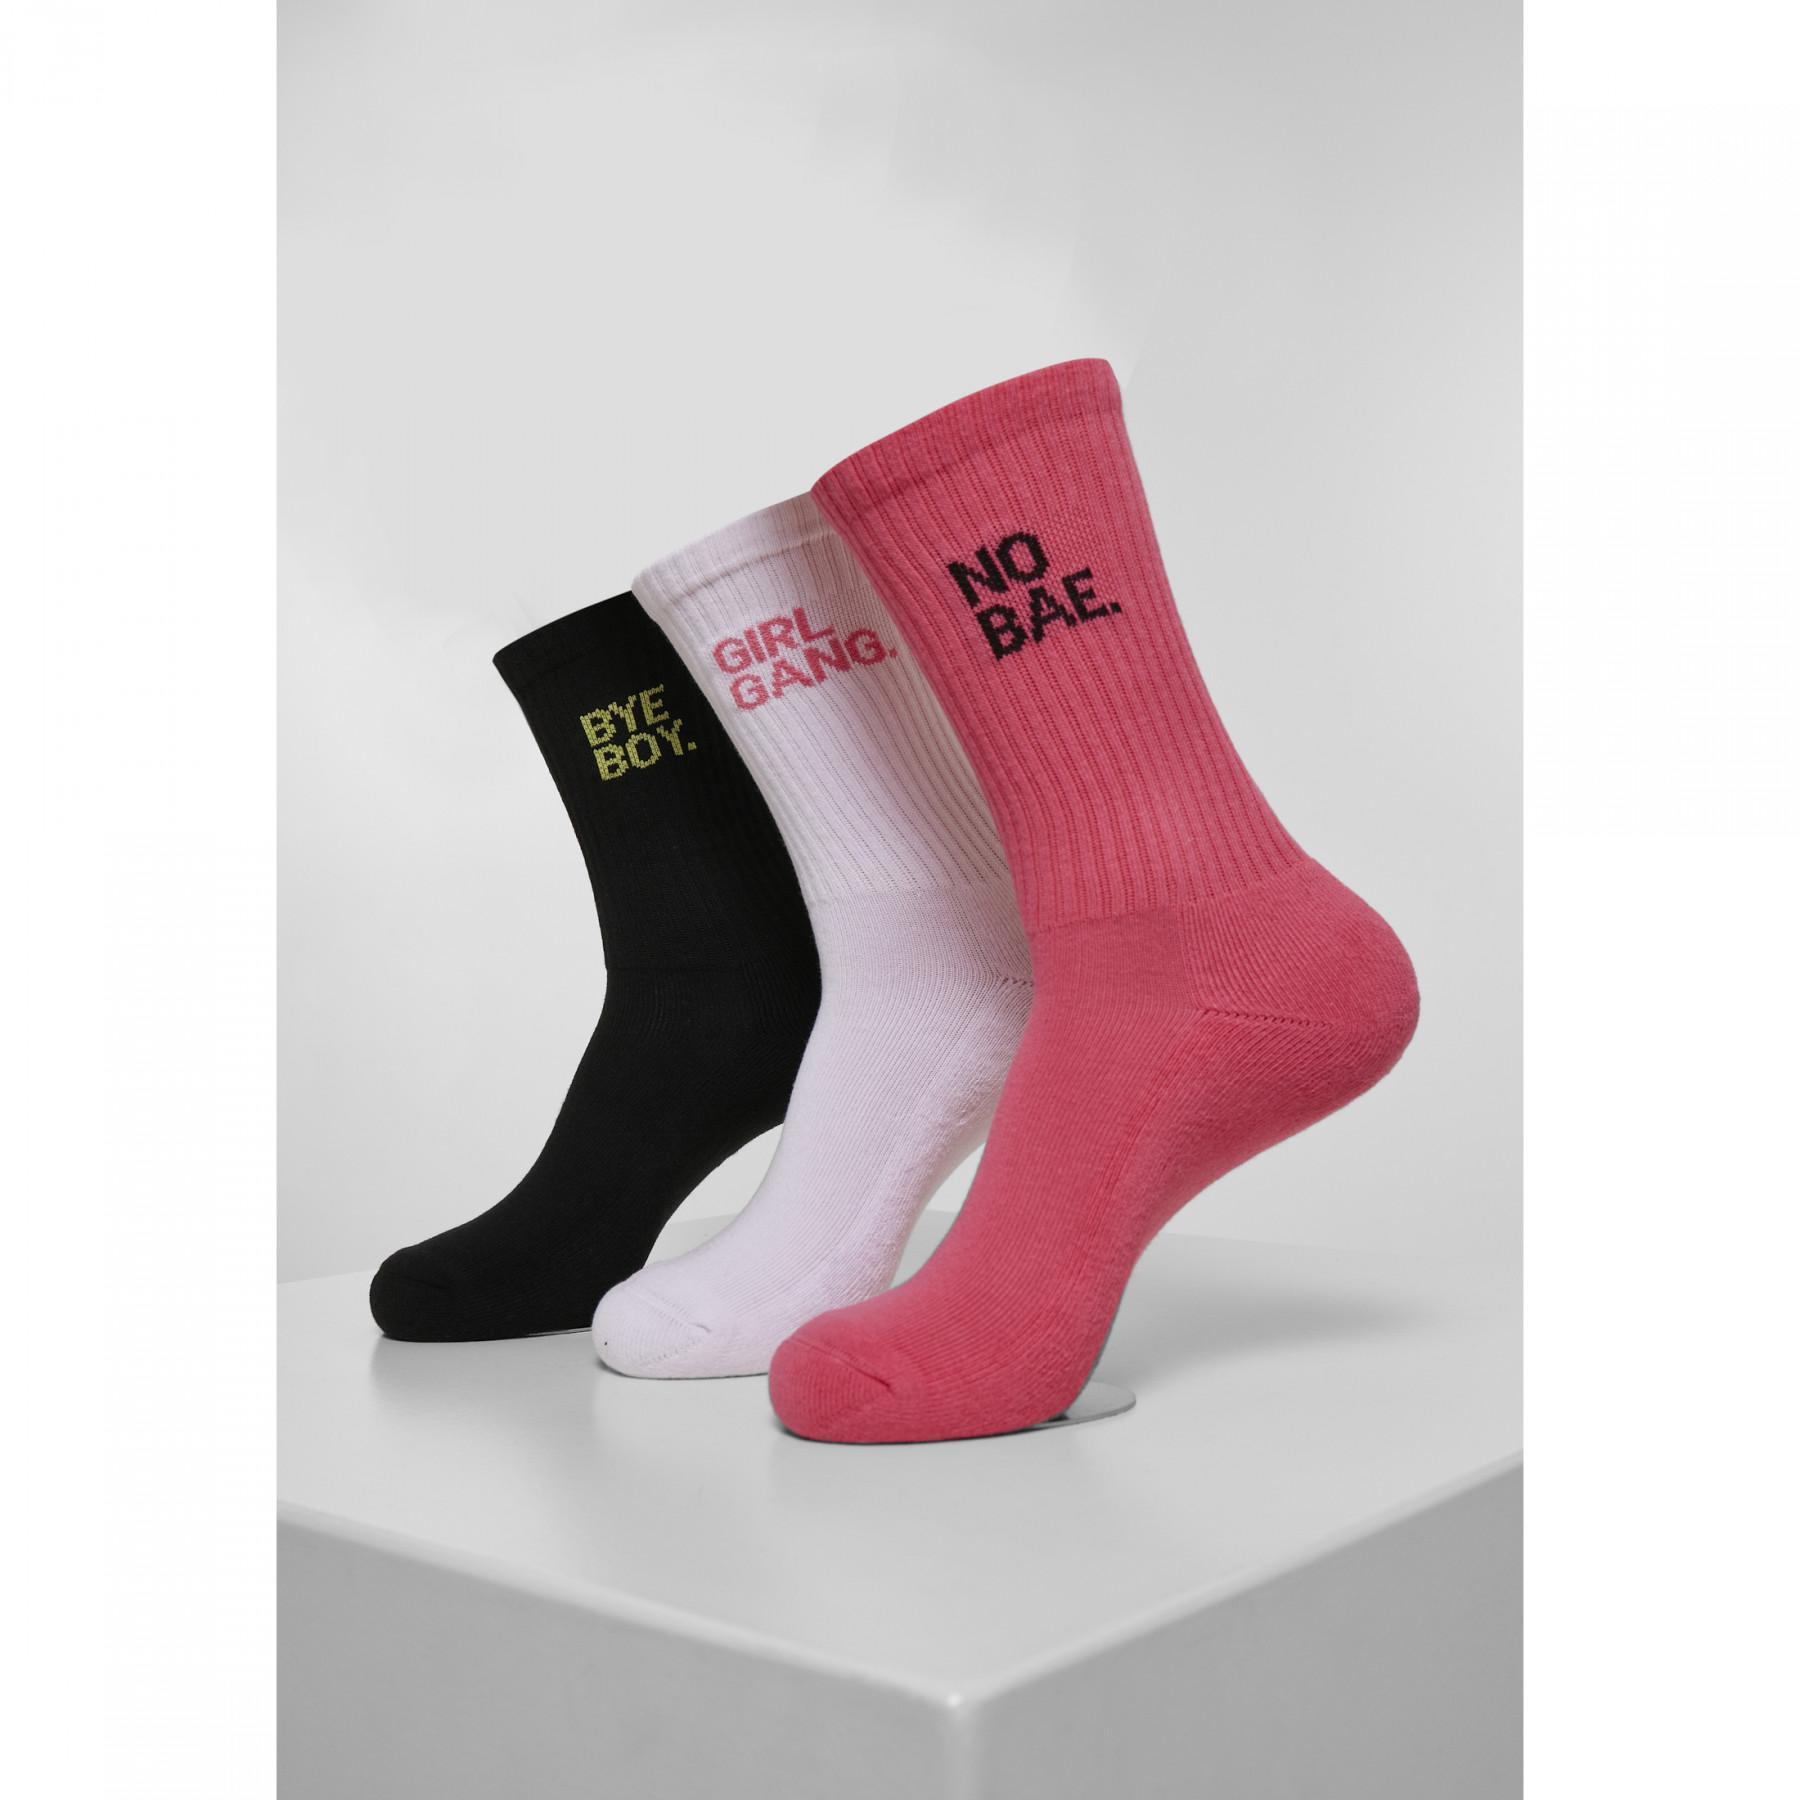 Socks Mister Tee girl gang (3pcs)